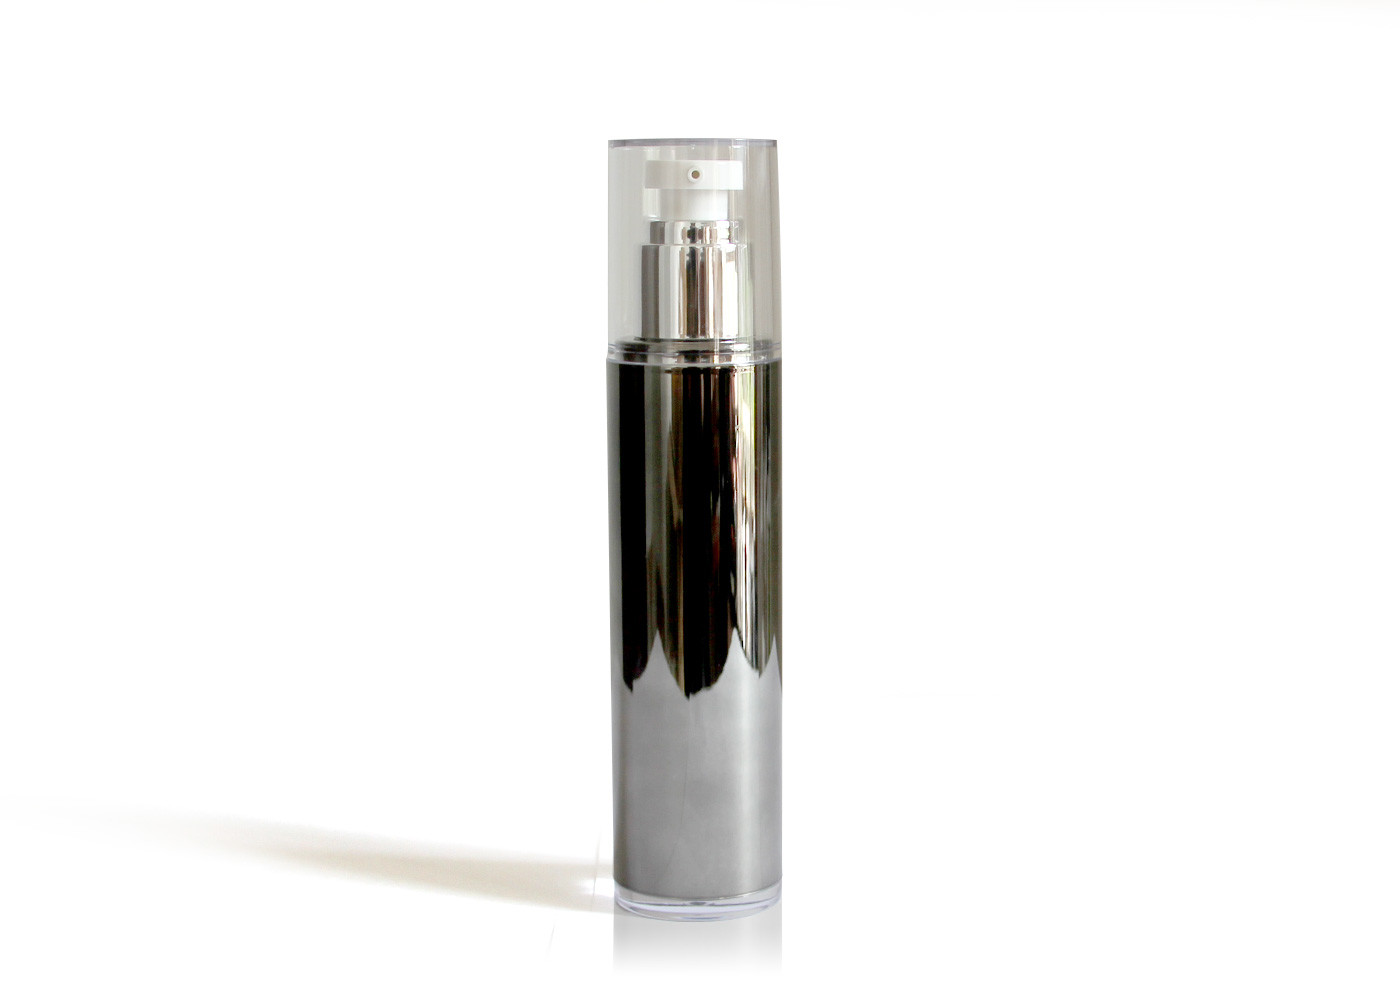  Silver Aluminum Cream Pump Bottle  / Eye Serum Airless Dispenser Bottles Manufactures